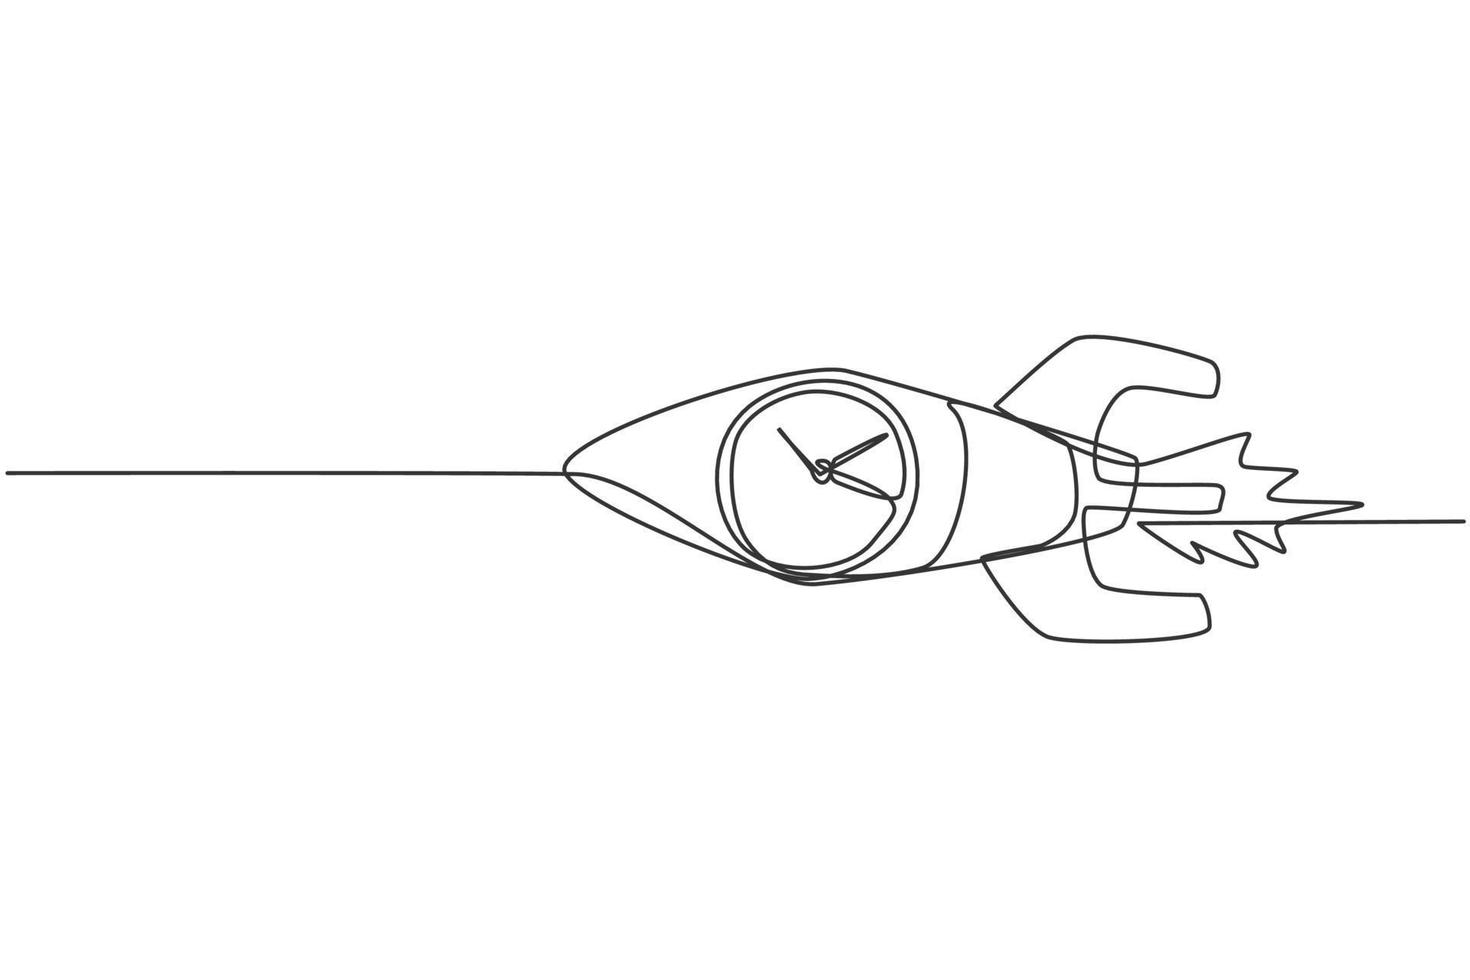 enda enradsteckning av snabbflygande raket med analog klocka inuti objektet. affärstid disciplin metafor koncept. modern kontinuerlig linje rita design grafisk vektor illustration